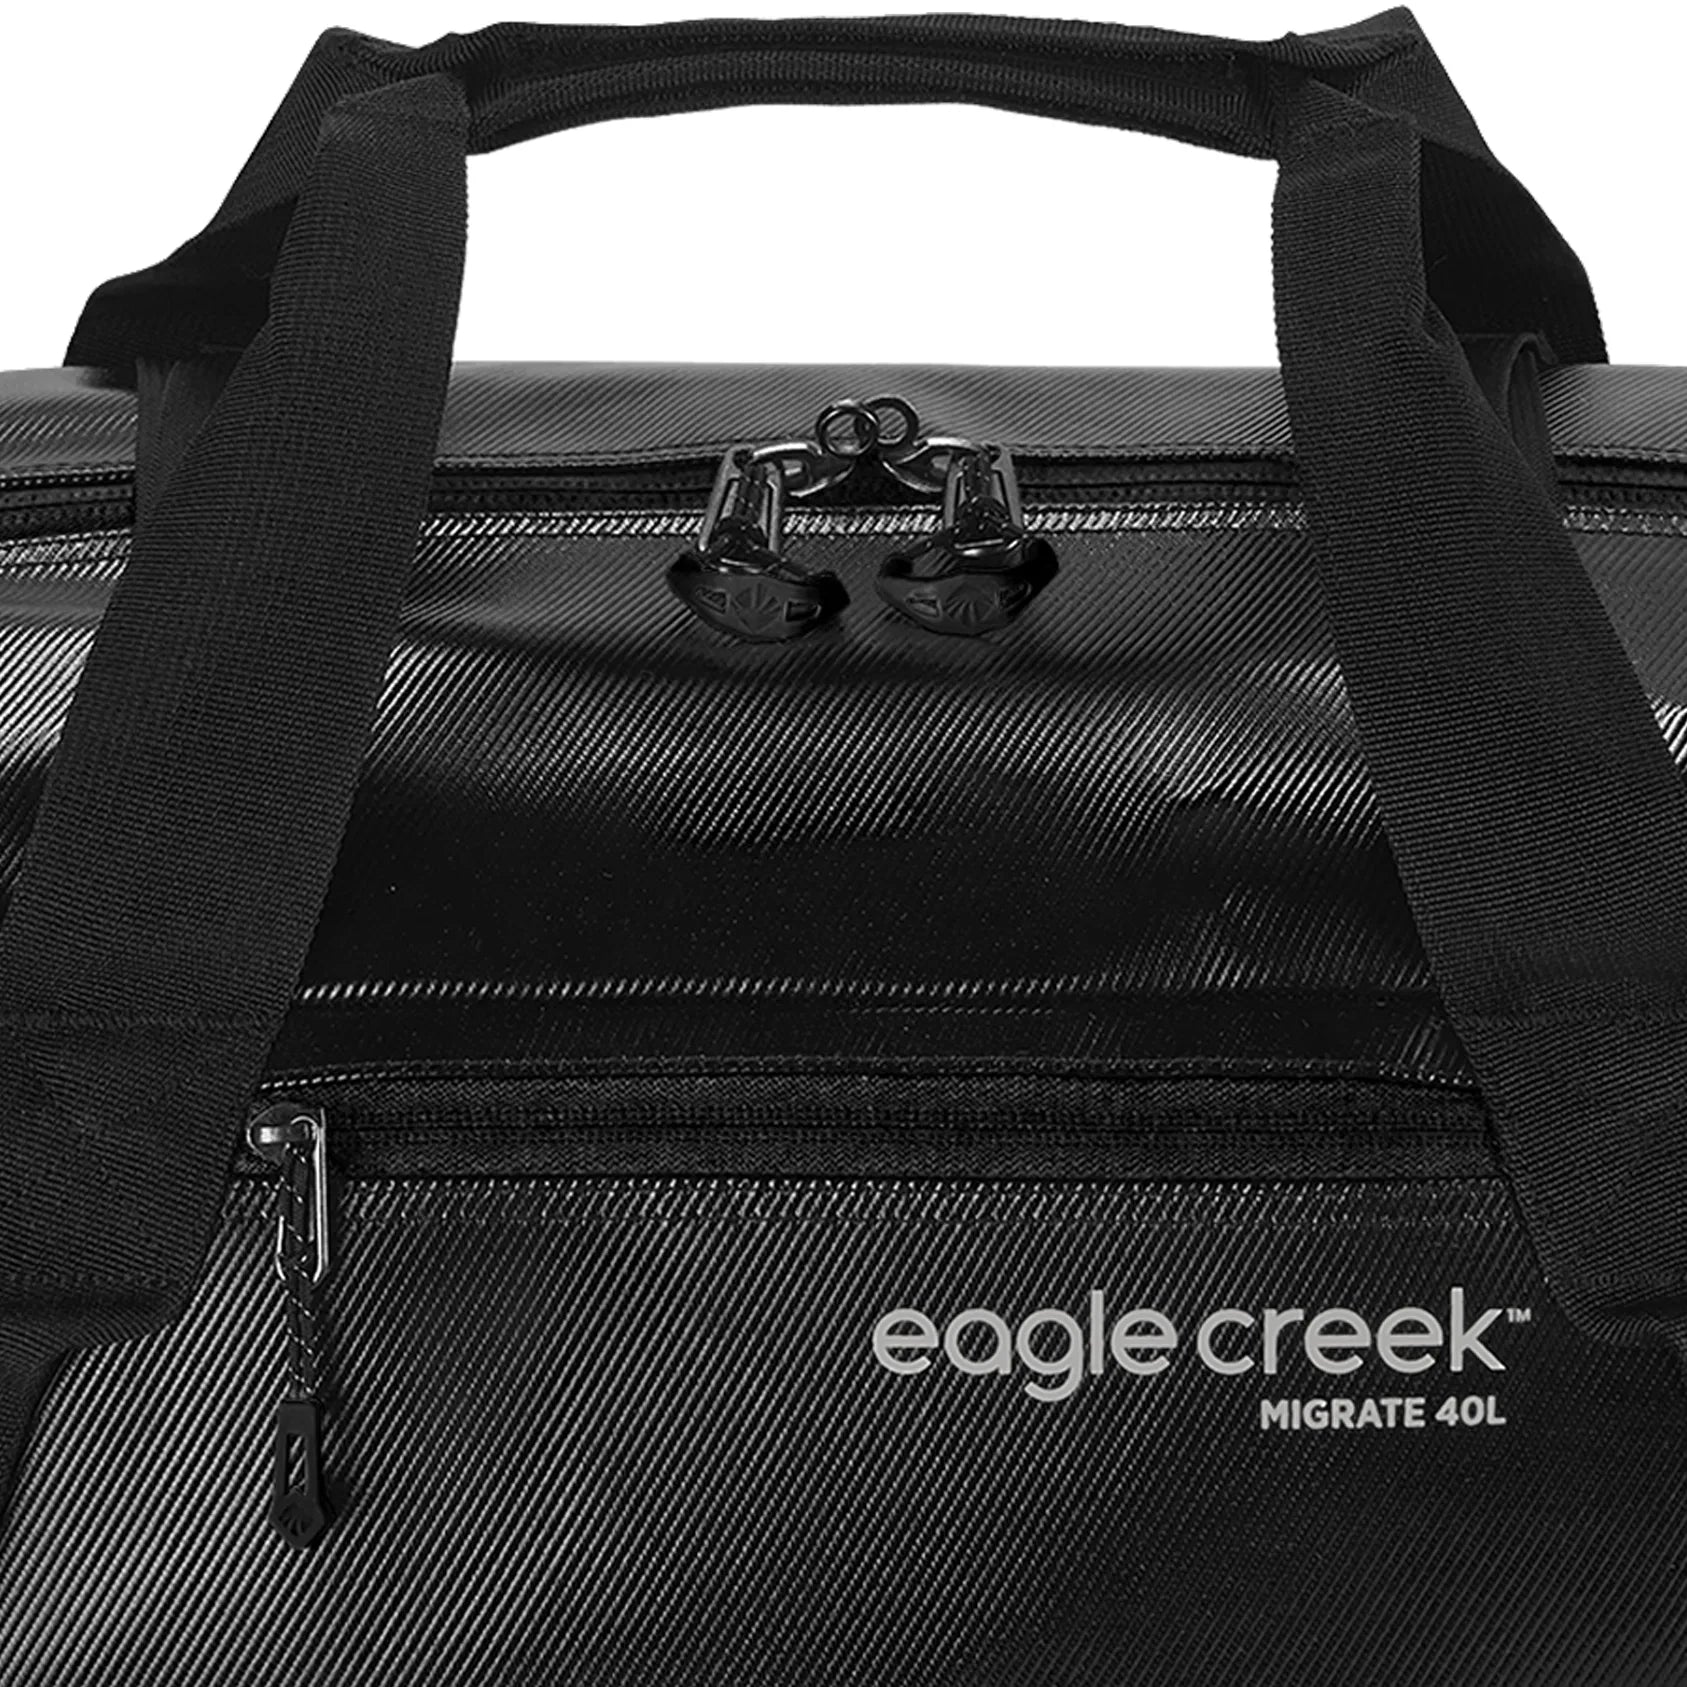 Eagle Creek Migrate sac de voyage 47 cm - jaune pissenlit